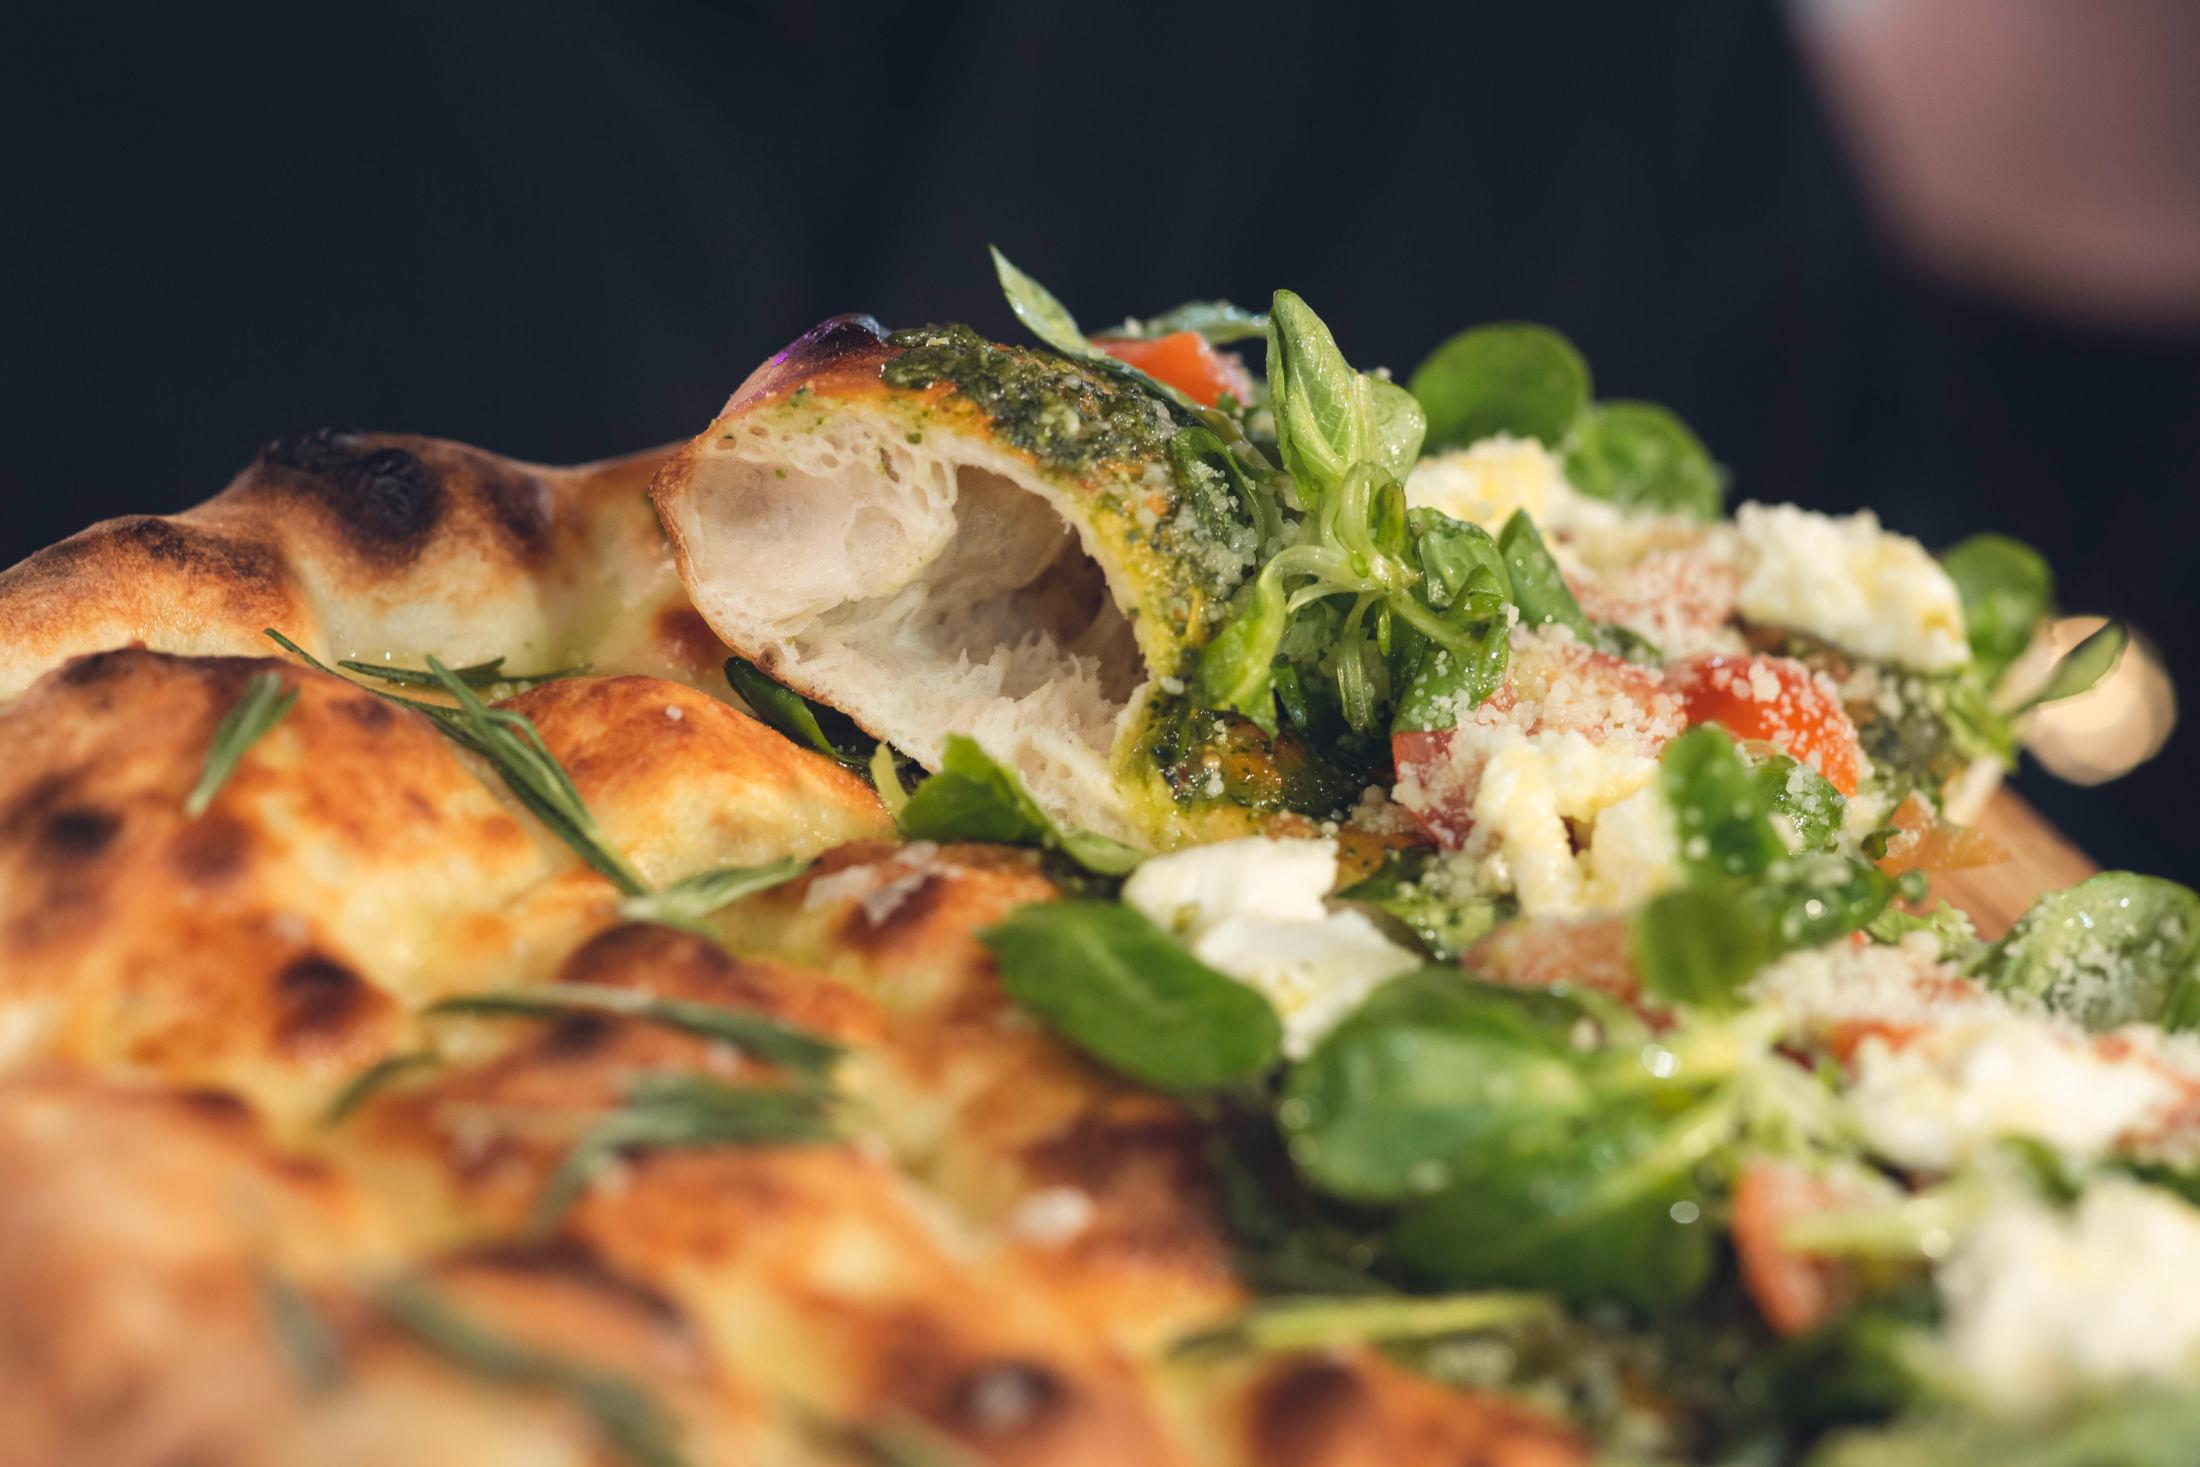 CRISPI FRISTELSE: En av forskjellene fra tradisjonell pizza er at toppingen legges på etter at bunnen er stekt. Foto: Krister Sørbø/VG